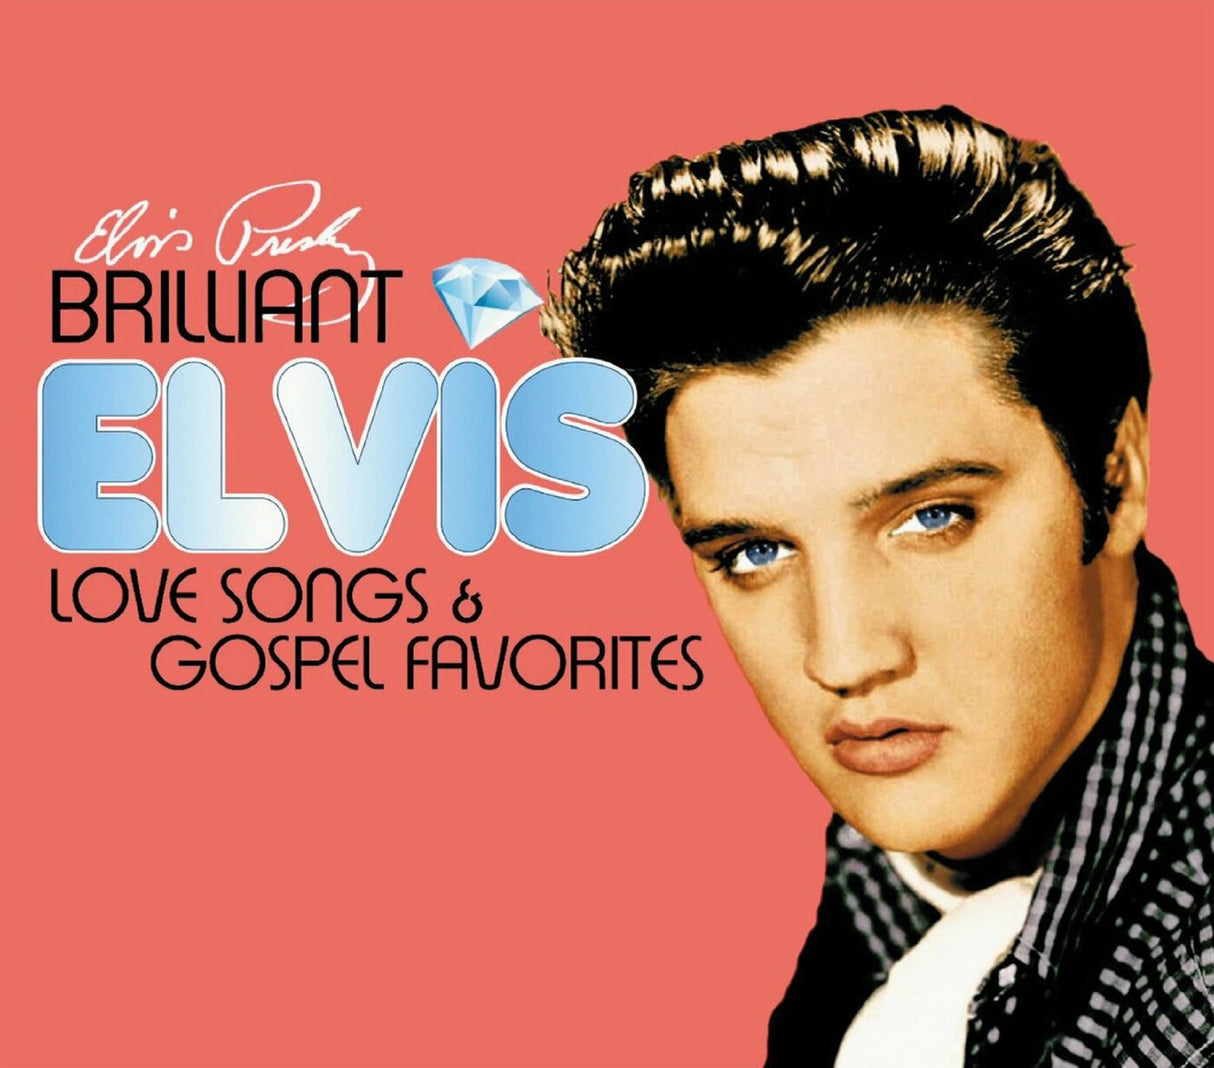 Elvis Presley - Brilliant Elvis: Love Songs & Gospel Favorites [Rock]